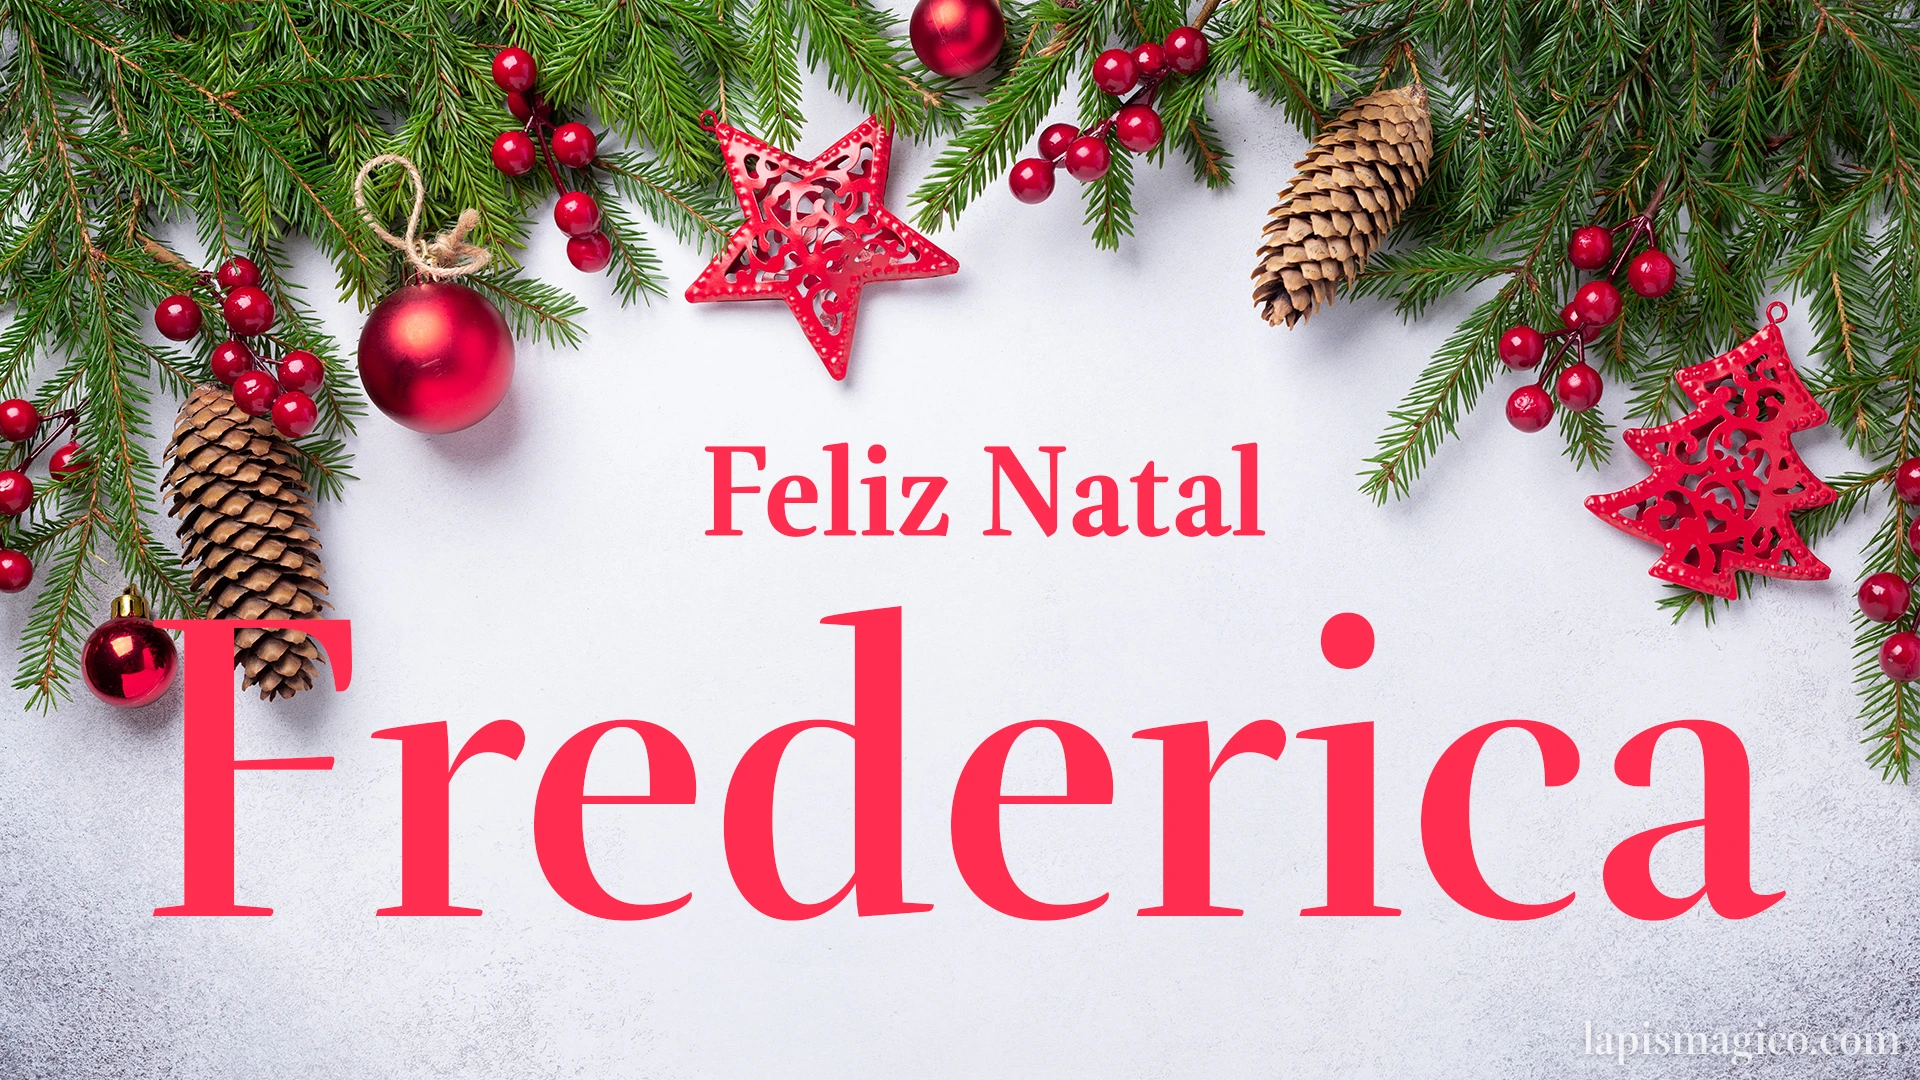 Oh Frederica, cinco postais de Feliz Natal Postal com o teu nome